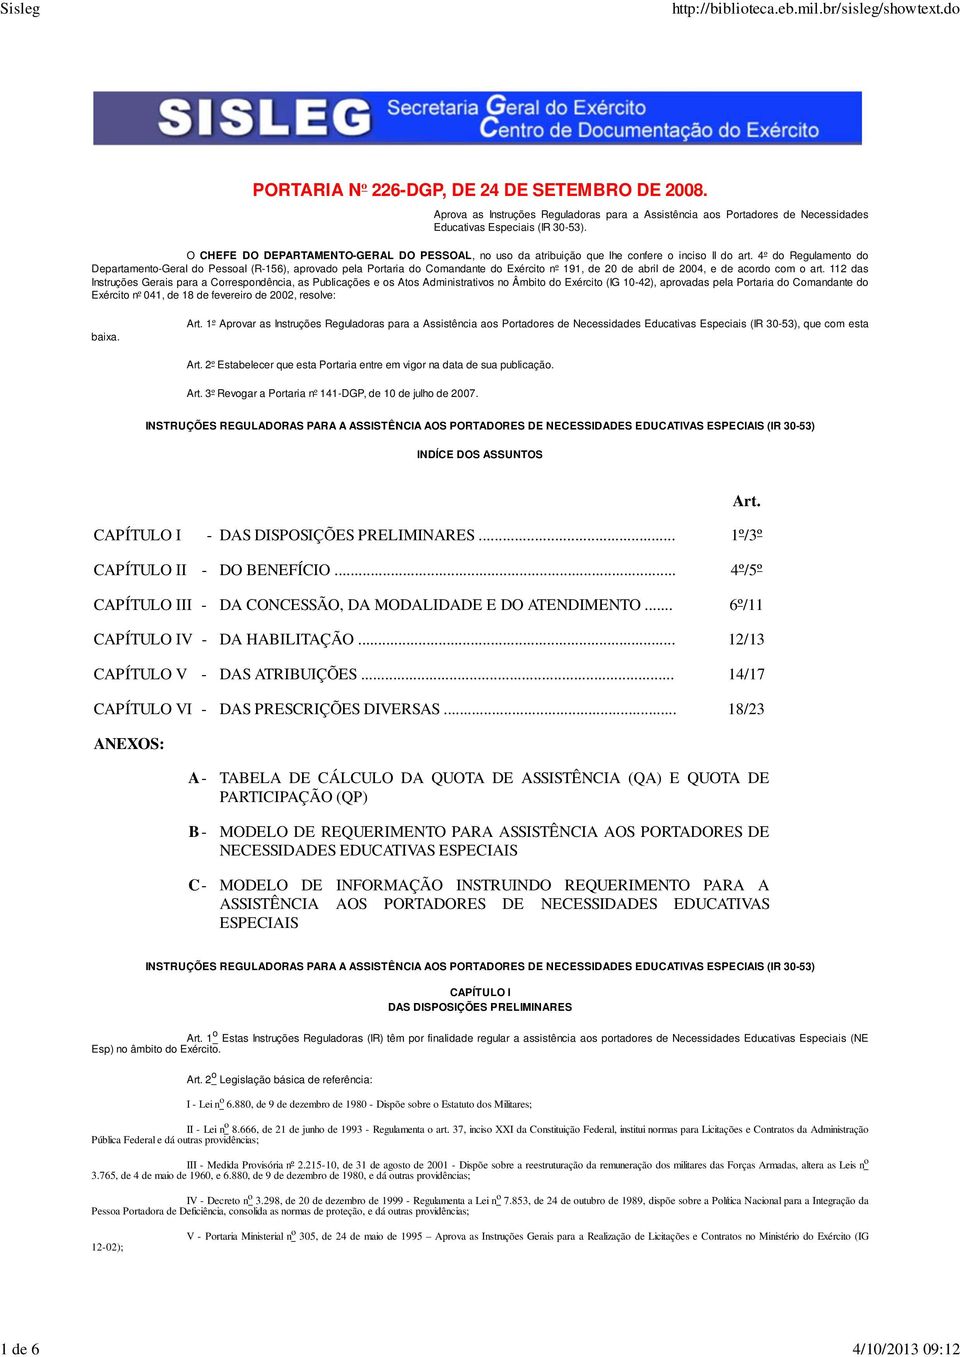 4º do Regulamento do Departamento-Geral do Pessoal (R-156), aprovado pela Portaria do Comandante do Exército nº 191, de 20 de abril de 2004, e de acordo com o art.